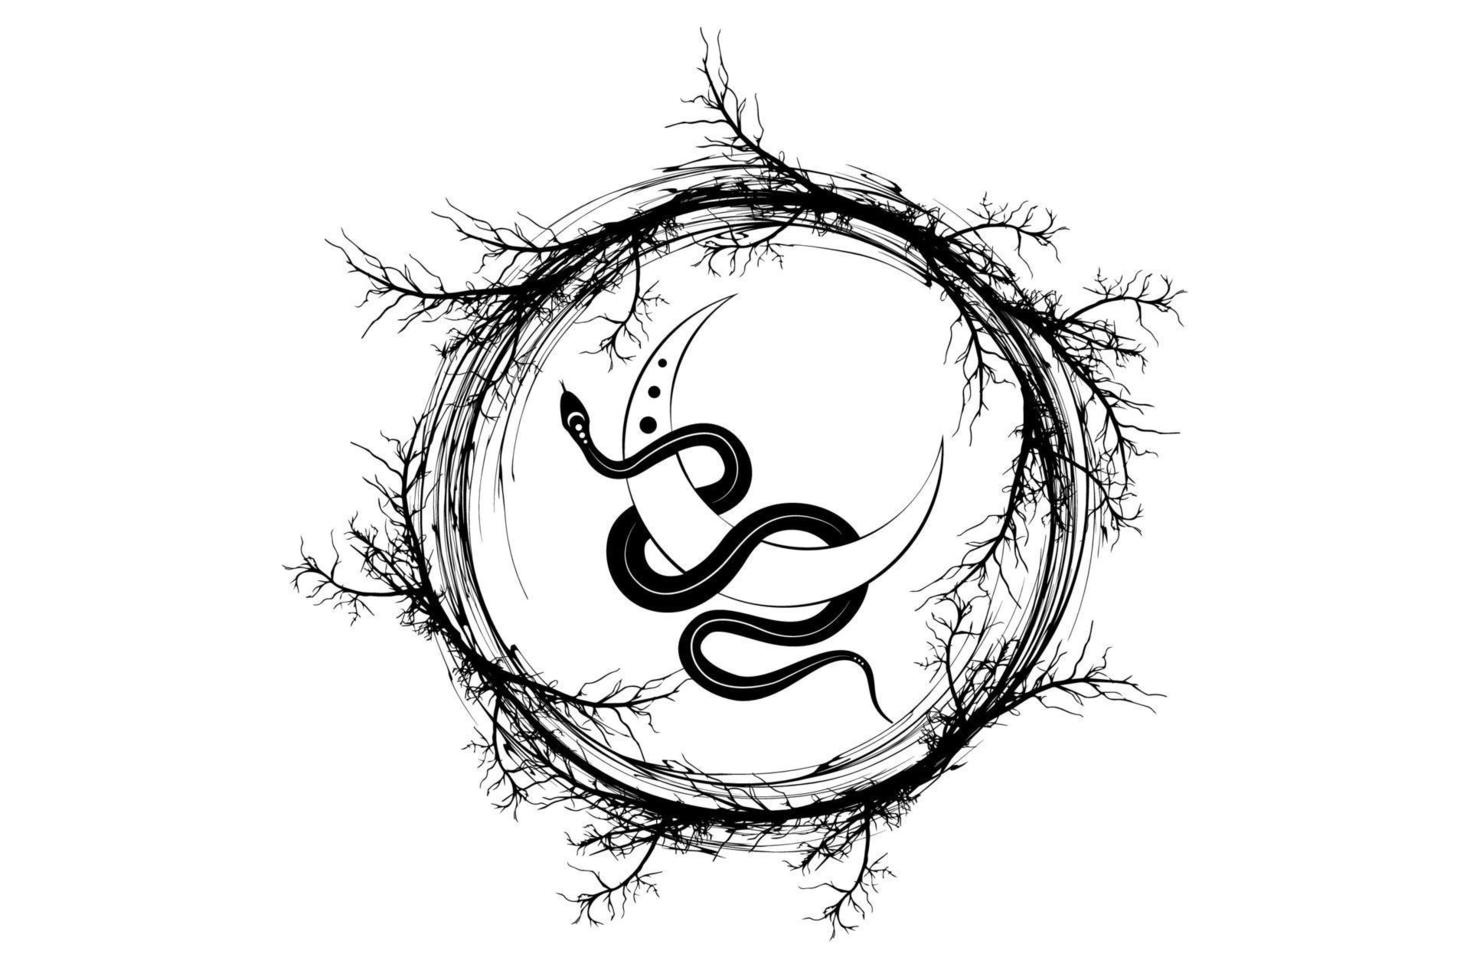 svart orm på magisk mystisk halvmåne i krans av grenar. helig geometri, himmelska hedniska wiccan gudinna symbol. tecken, tatuering, energi cirkel, boho stil, vektor isolerad på vit bakgrund